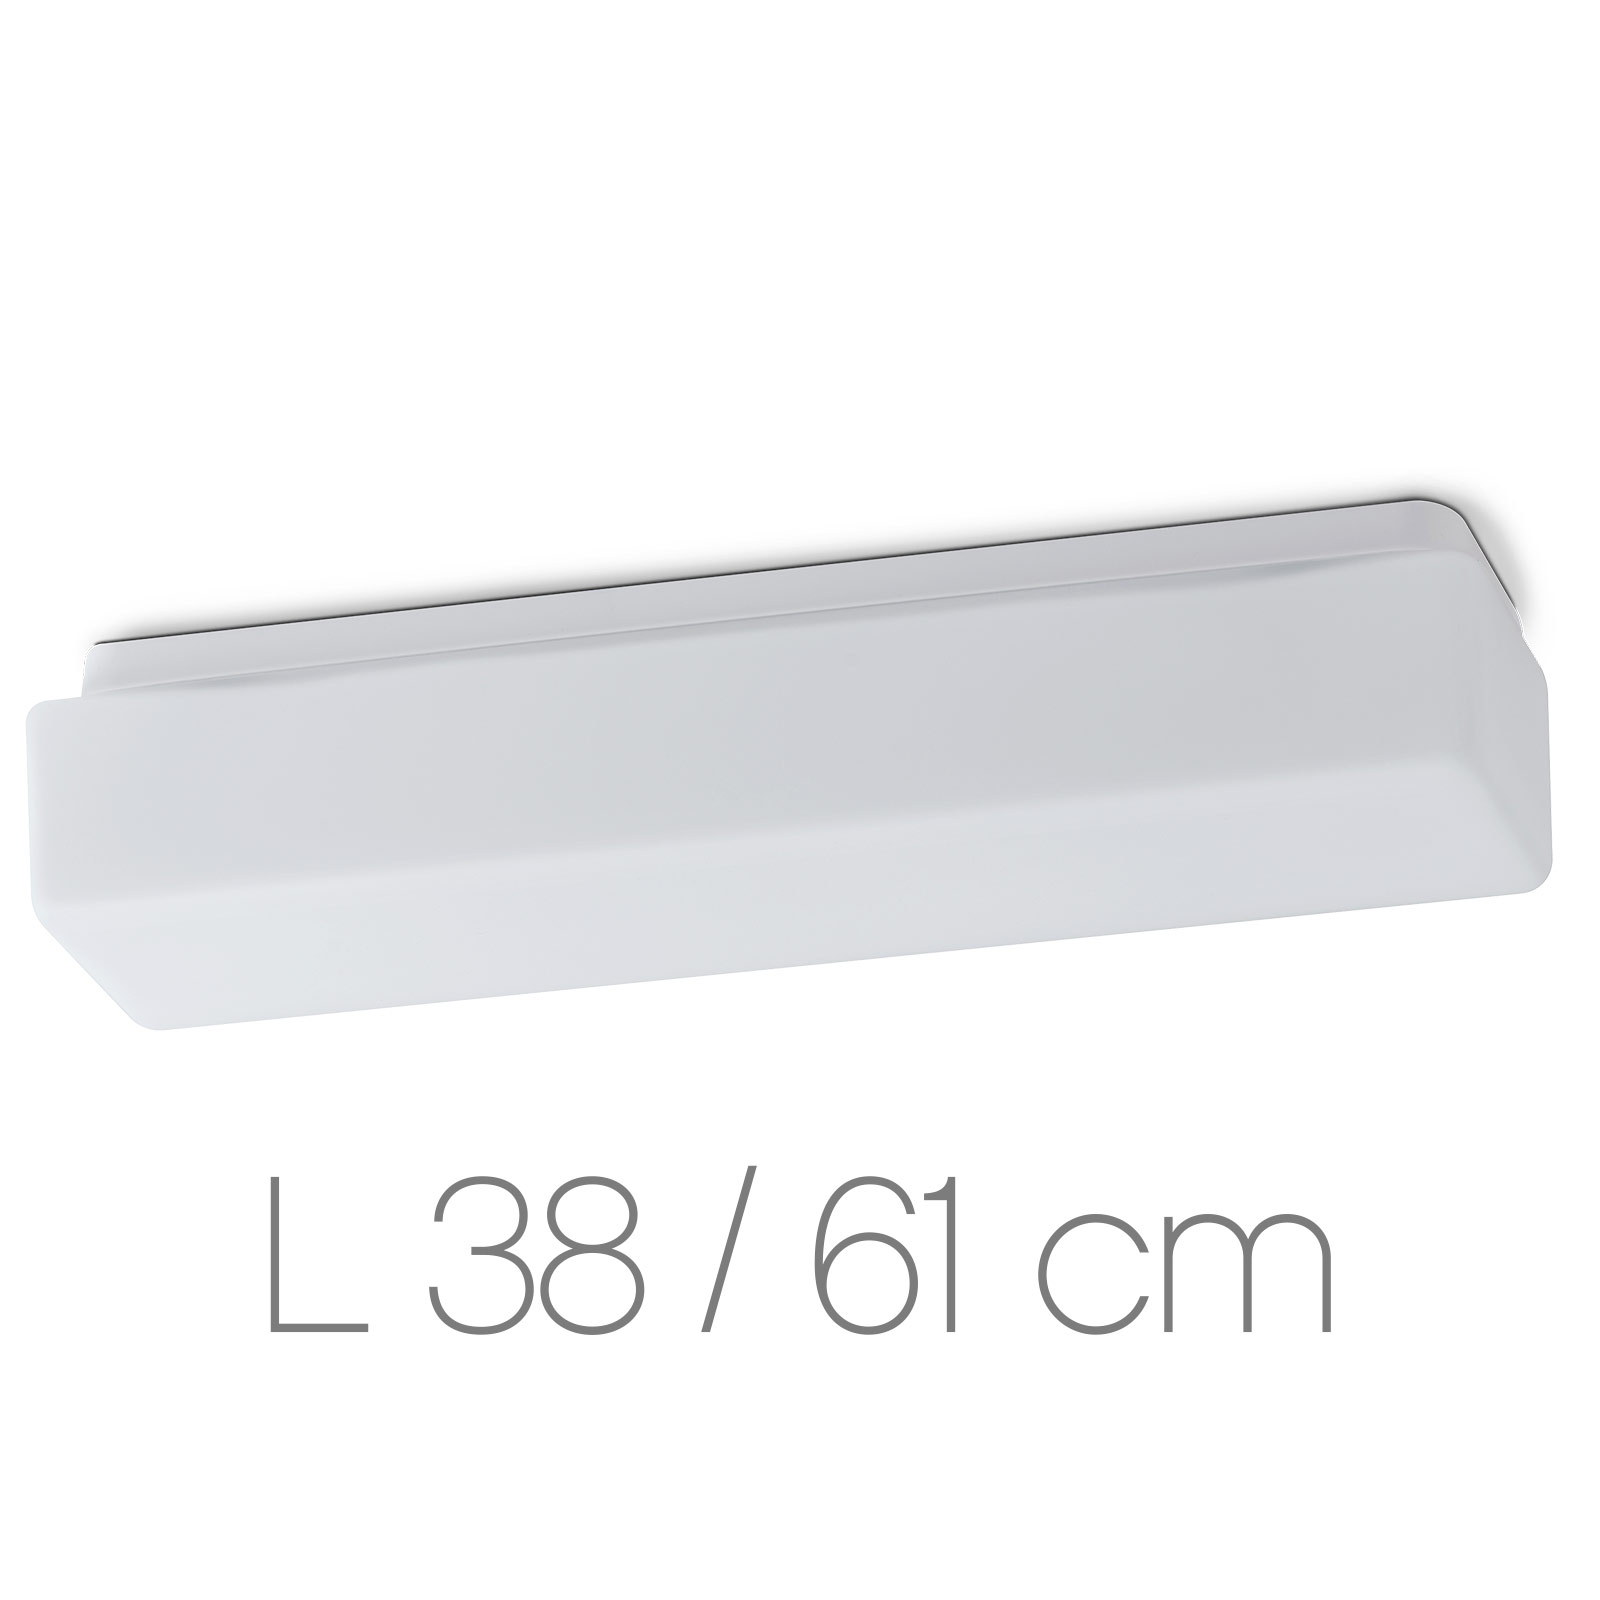 Längliche Opalglas-Deckenleuchte SYLVA mit Balken-Profil, 38 / 61 cm: Längliche Deckenleuchte mit mattem Opalglas und dank IP44 großem Einsatzspektrum (hier 38 cm)